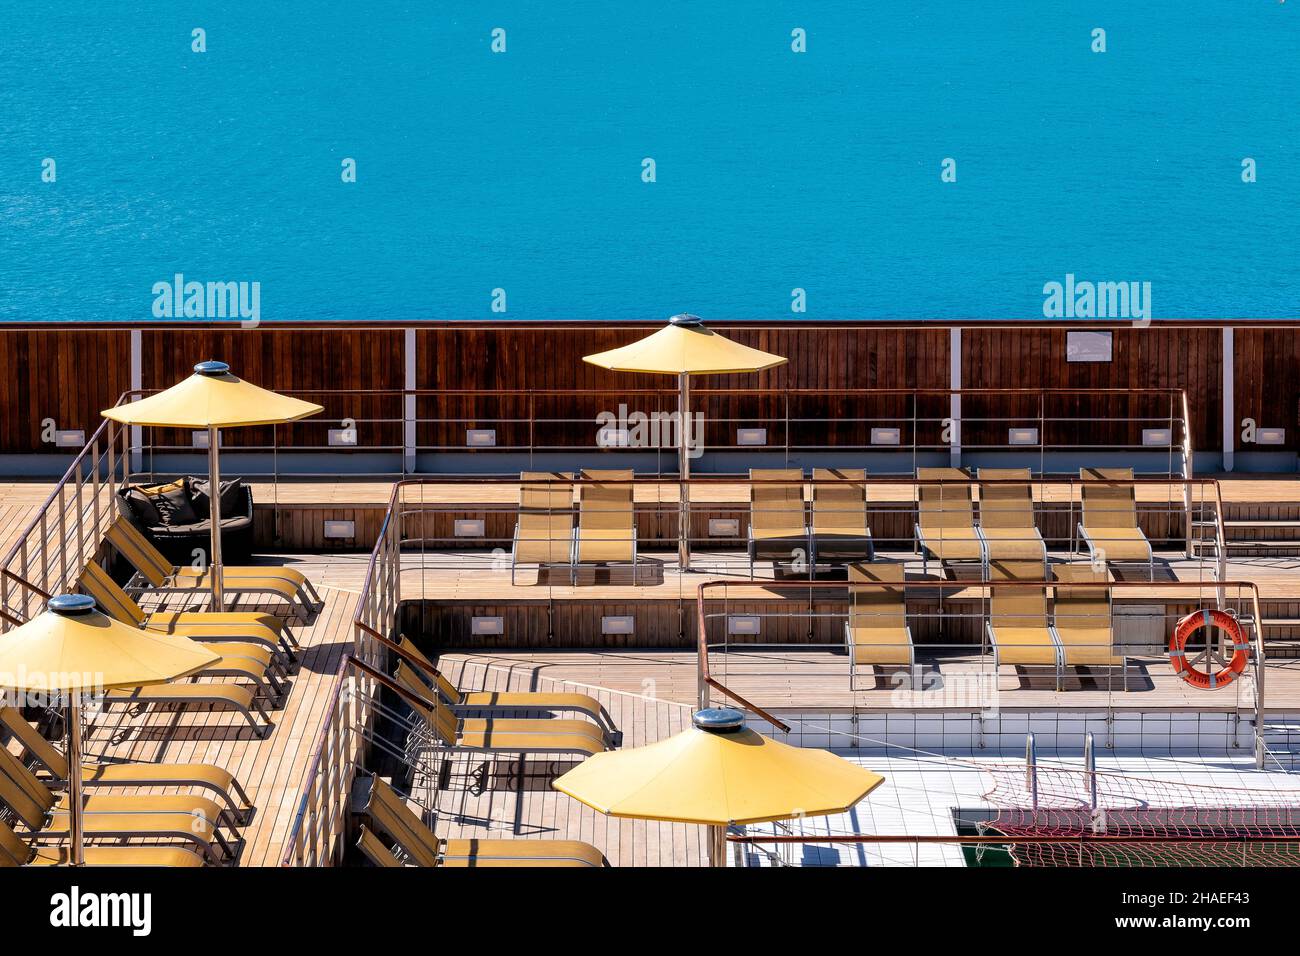 Una terraza retro con piscina en un antiguo crucero, tumbonas vacías y nadie alrededor Foto de stock